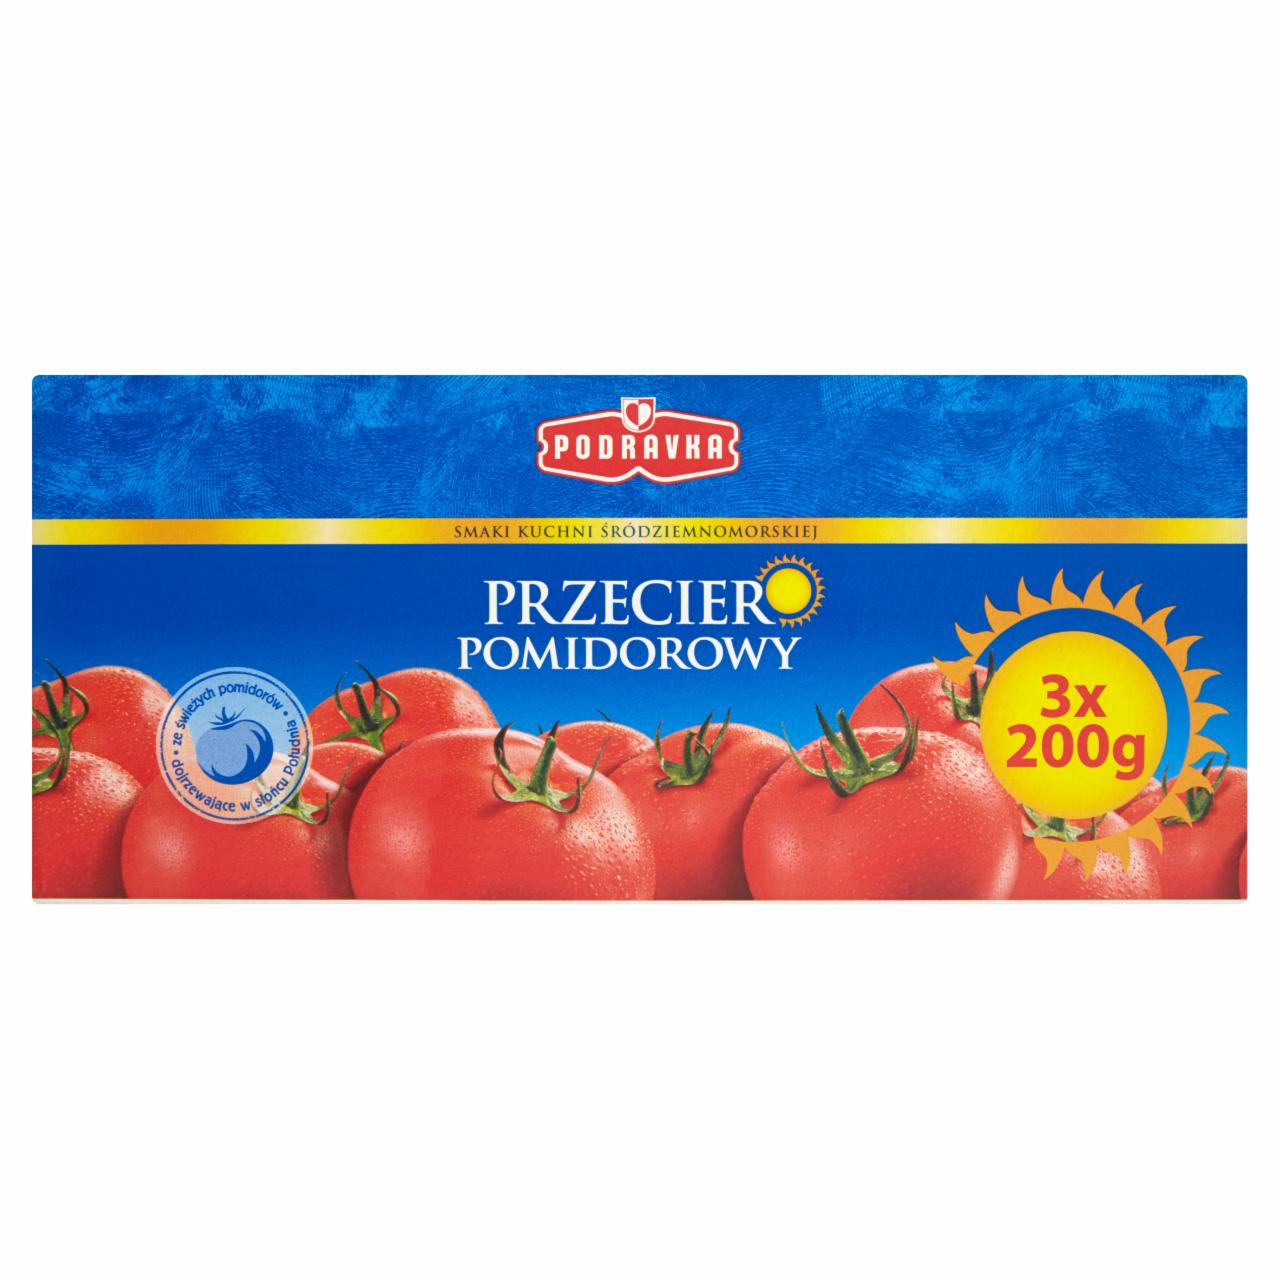 Zdjęcia - Podravka Przecier pomidorowy 600 g (3 x 200 g)